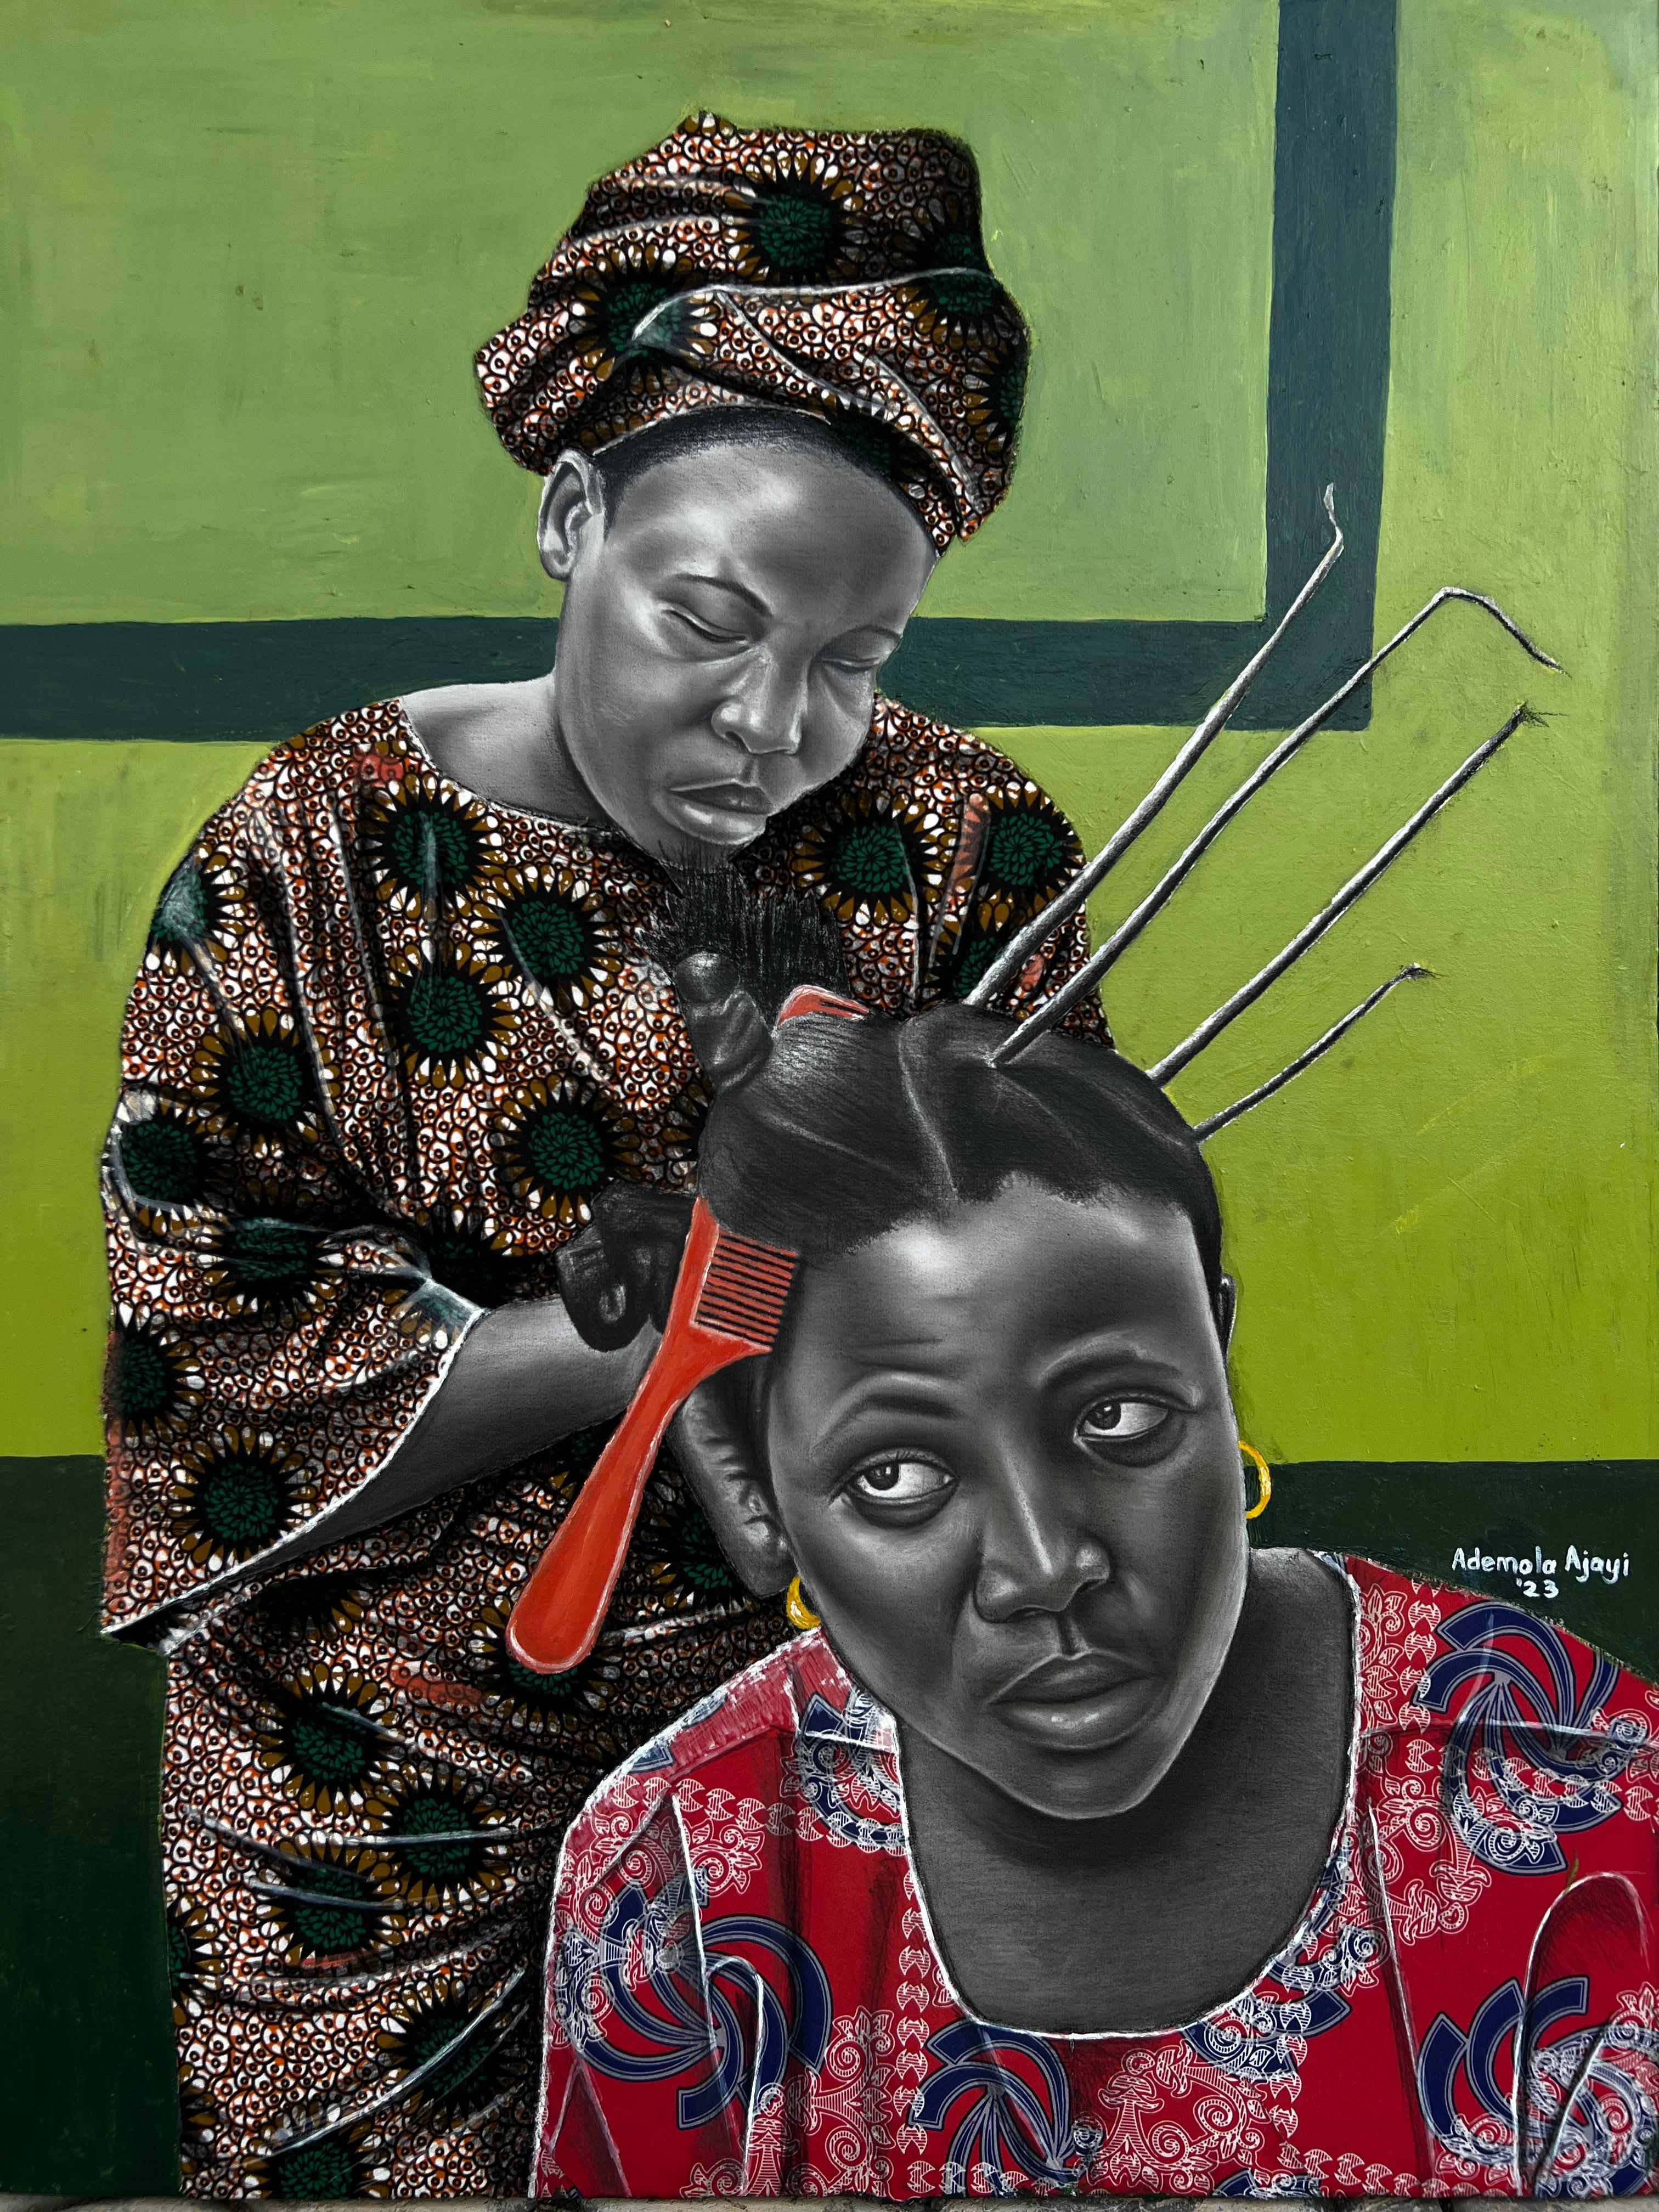 Ademola Clement Ajayi Portrait Painting – Für das Festival von morgen 